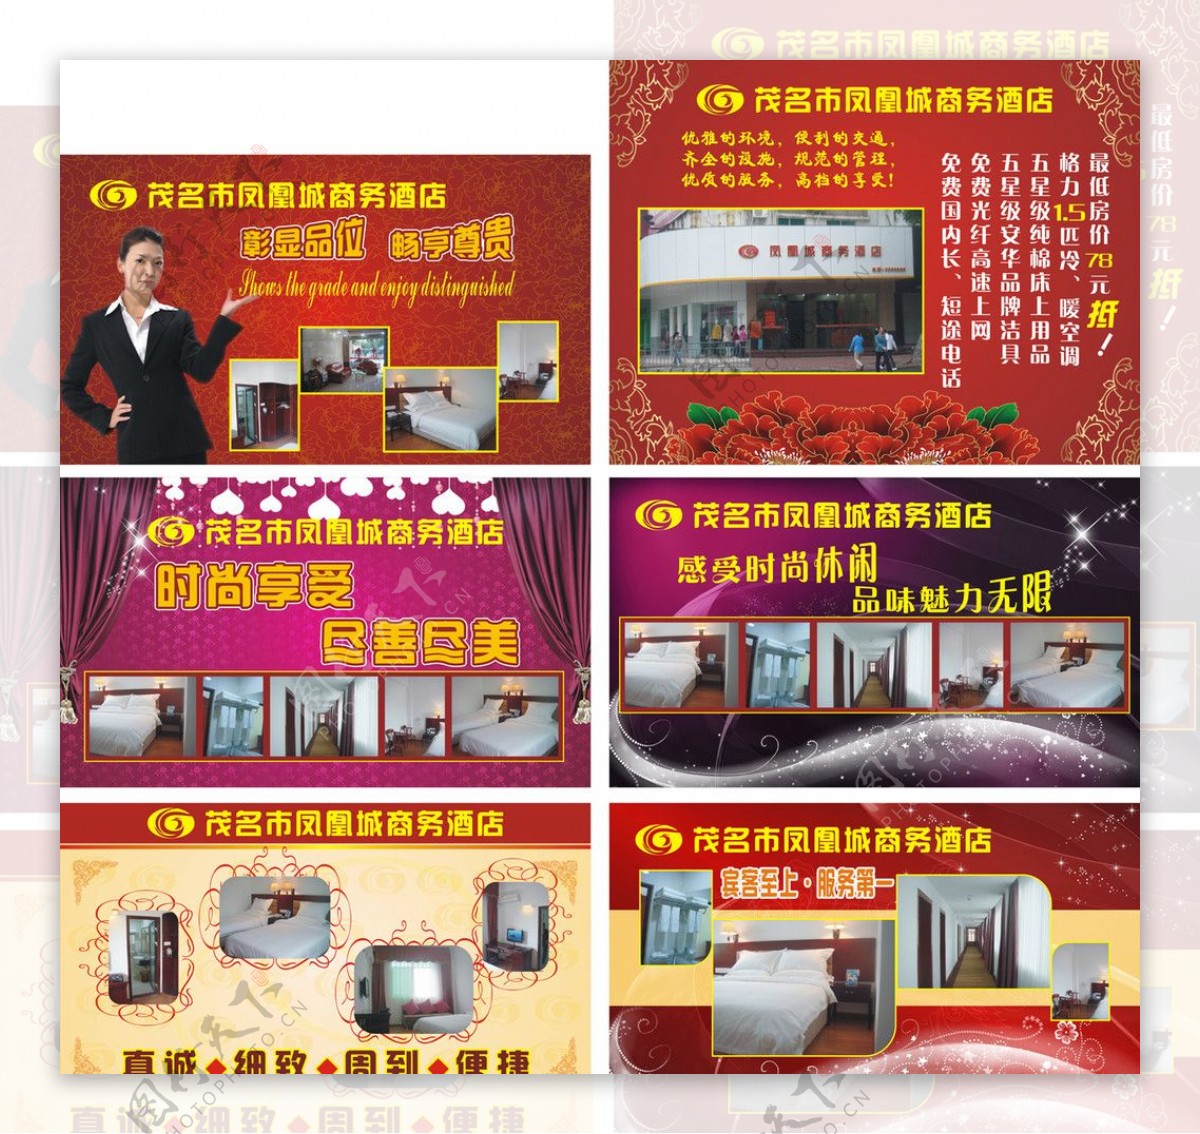 凤凰城商务酒店宣传广告图片